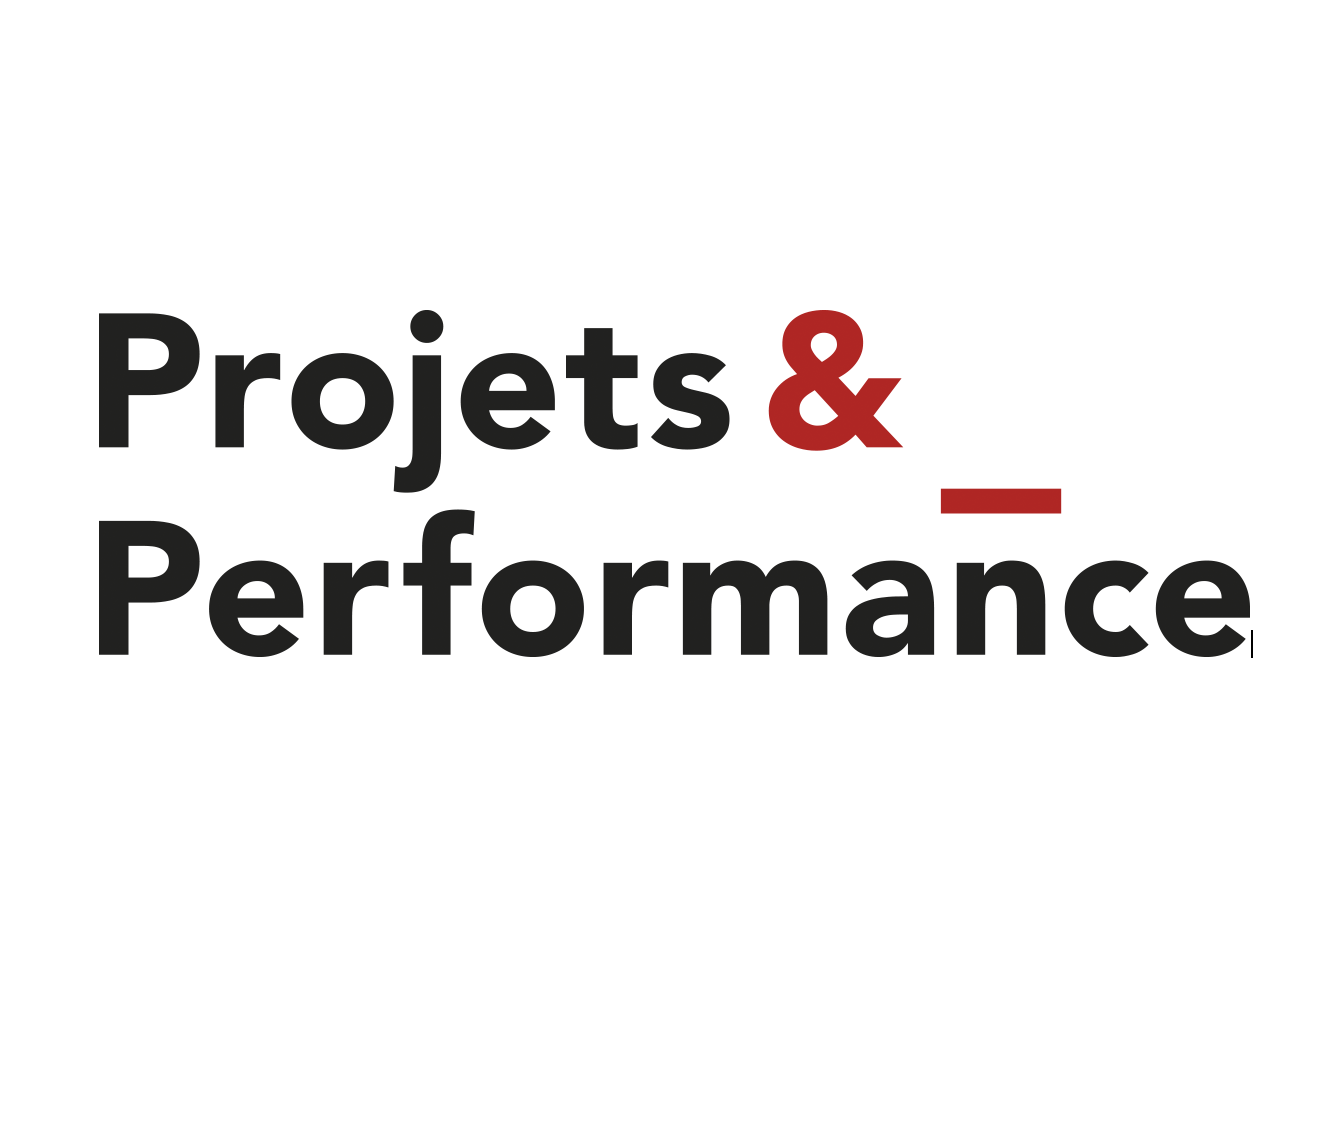 Projets et Performance